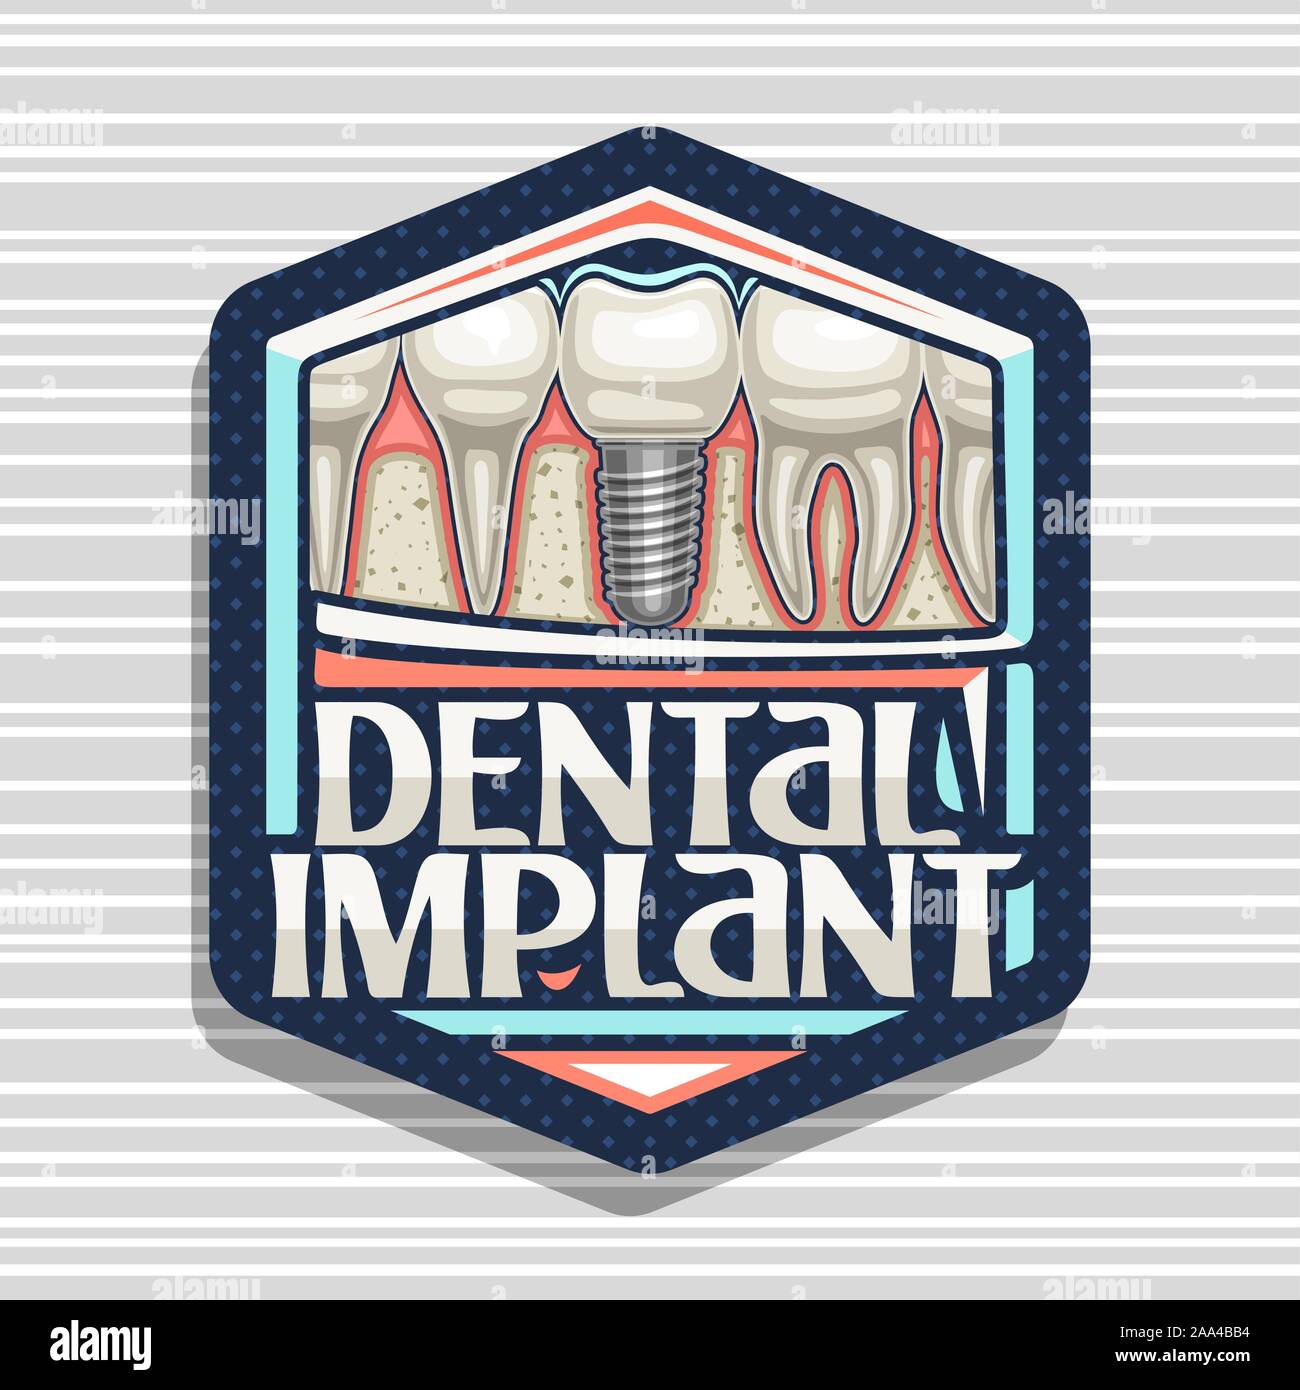 Logo Vector-implants dentaires, sombre avec badge hexagonal caricature dents humaines dans une rangée, lettrage original des mots dental implant, panneau pour pr Illustration de Vecteur